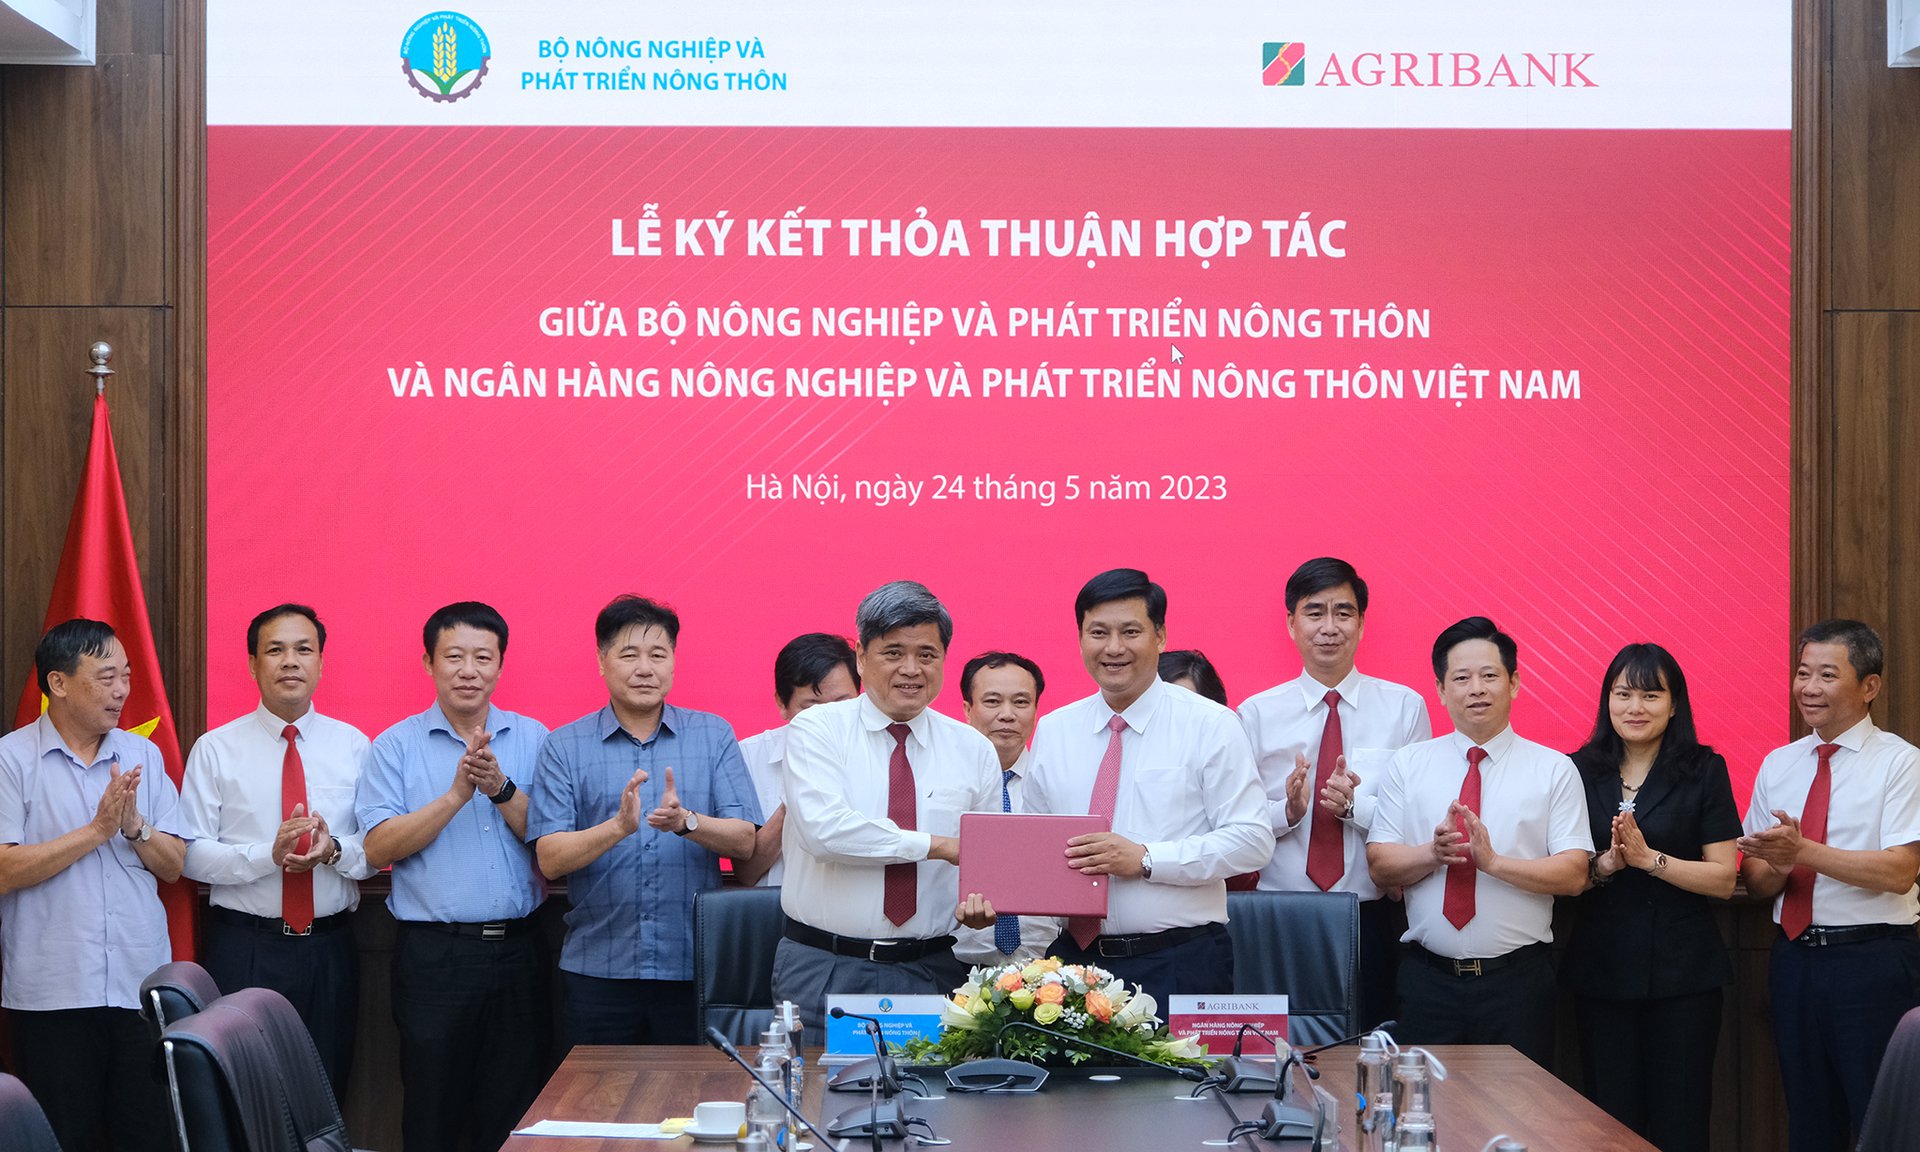 Thứ trưởng Trần Thanh Nam và Tổng giám đốc Phạm Toàn Vượng ký kết thỏa thuận hợp tác. Ảnh: Bảo Thắng.